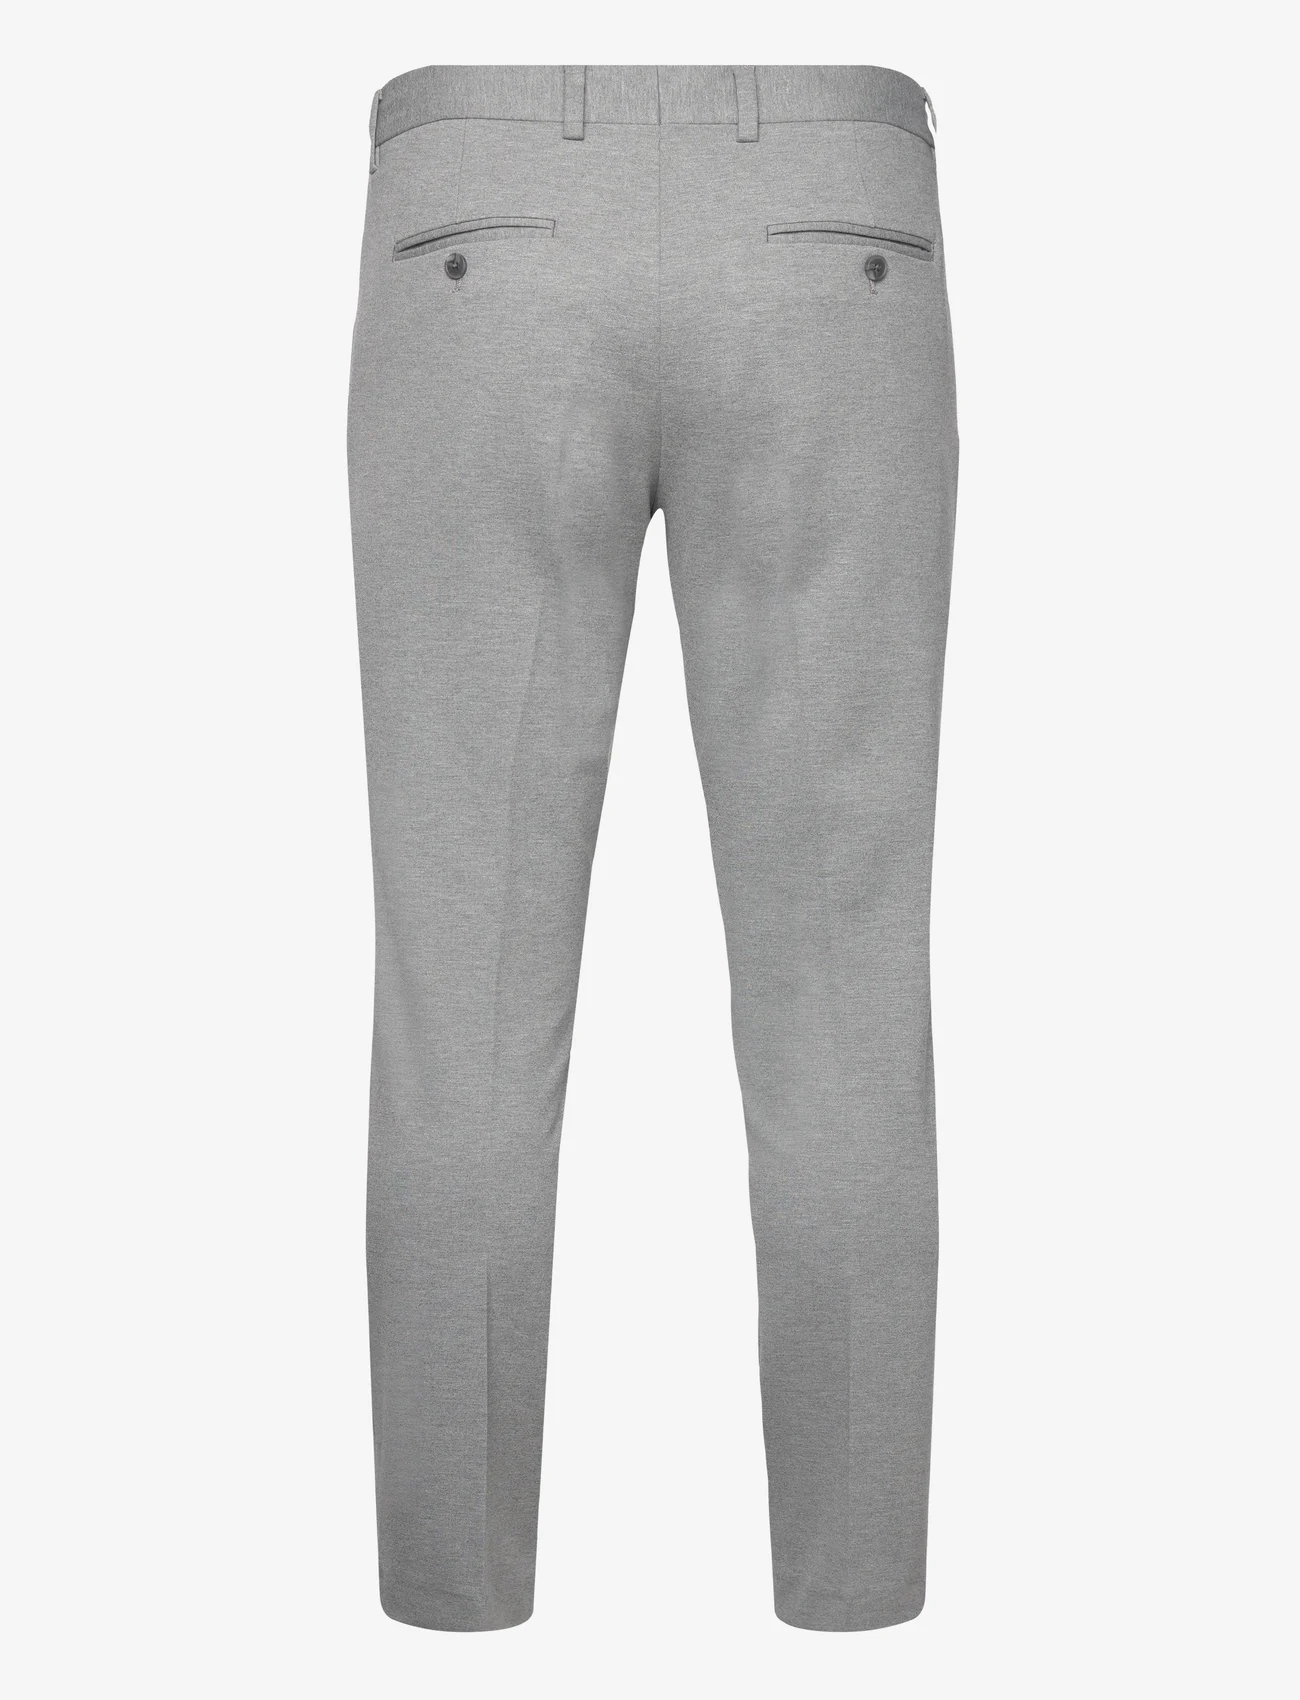 Selected Homme - SLHSLIM-DELON JERSEY TRS FLEX NOOS - pantalons - light grey melange - 1